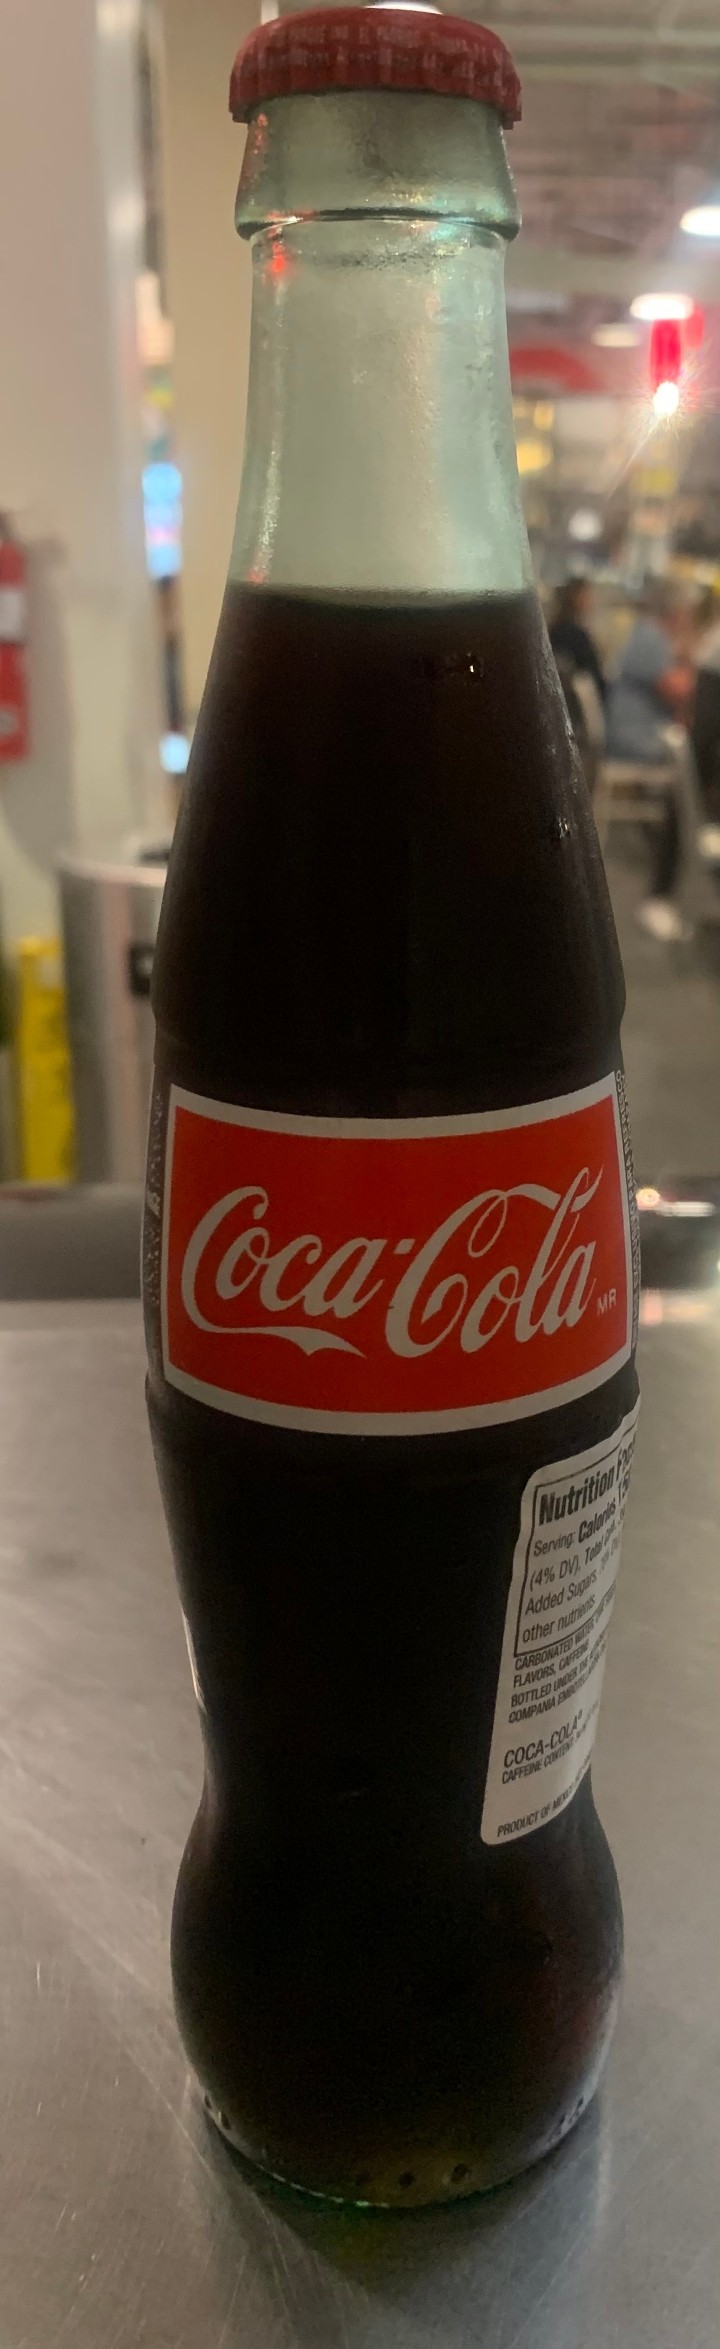 Glass bottle Coca-cola